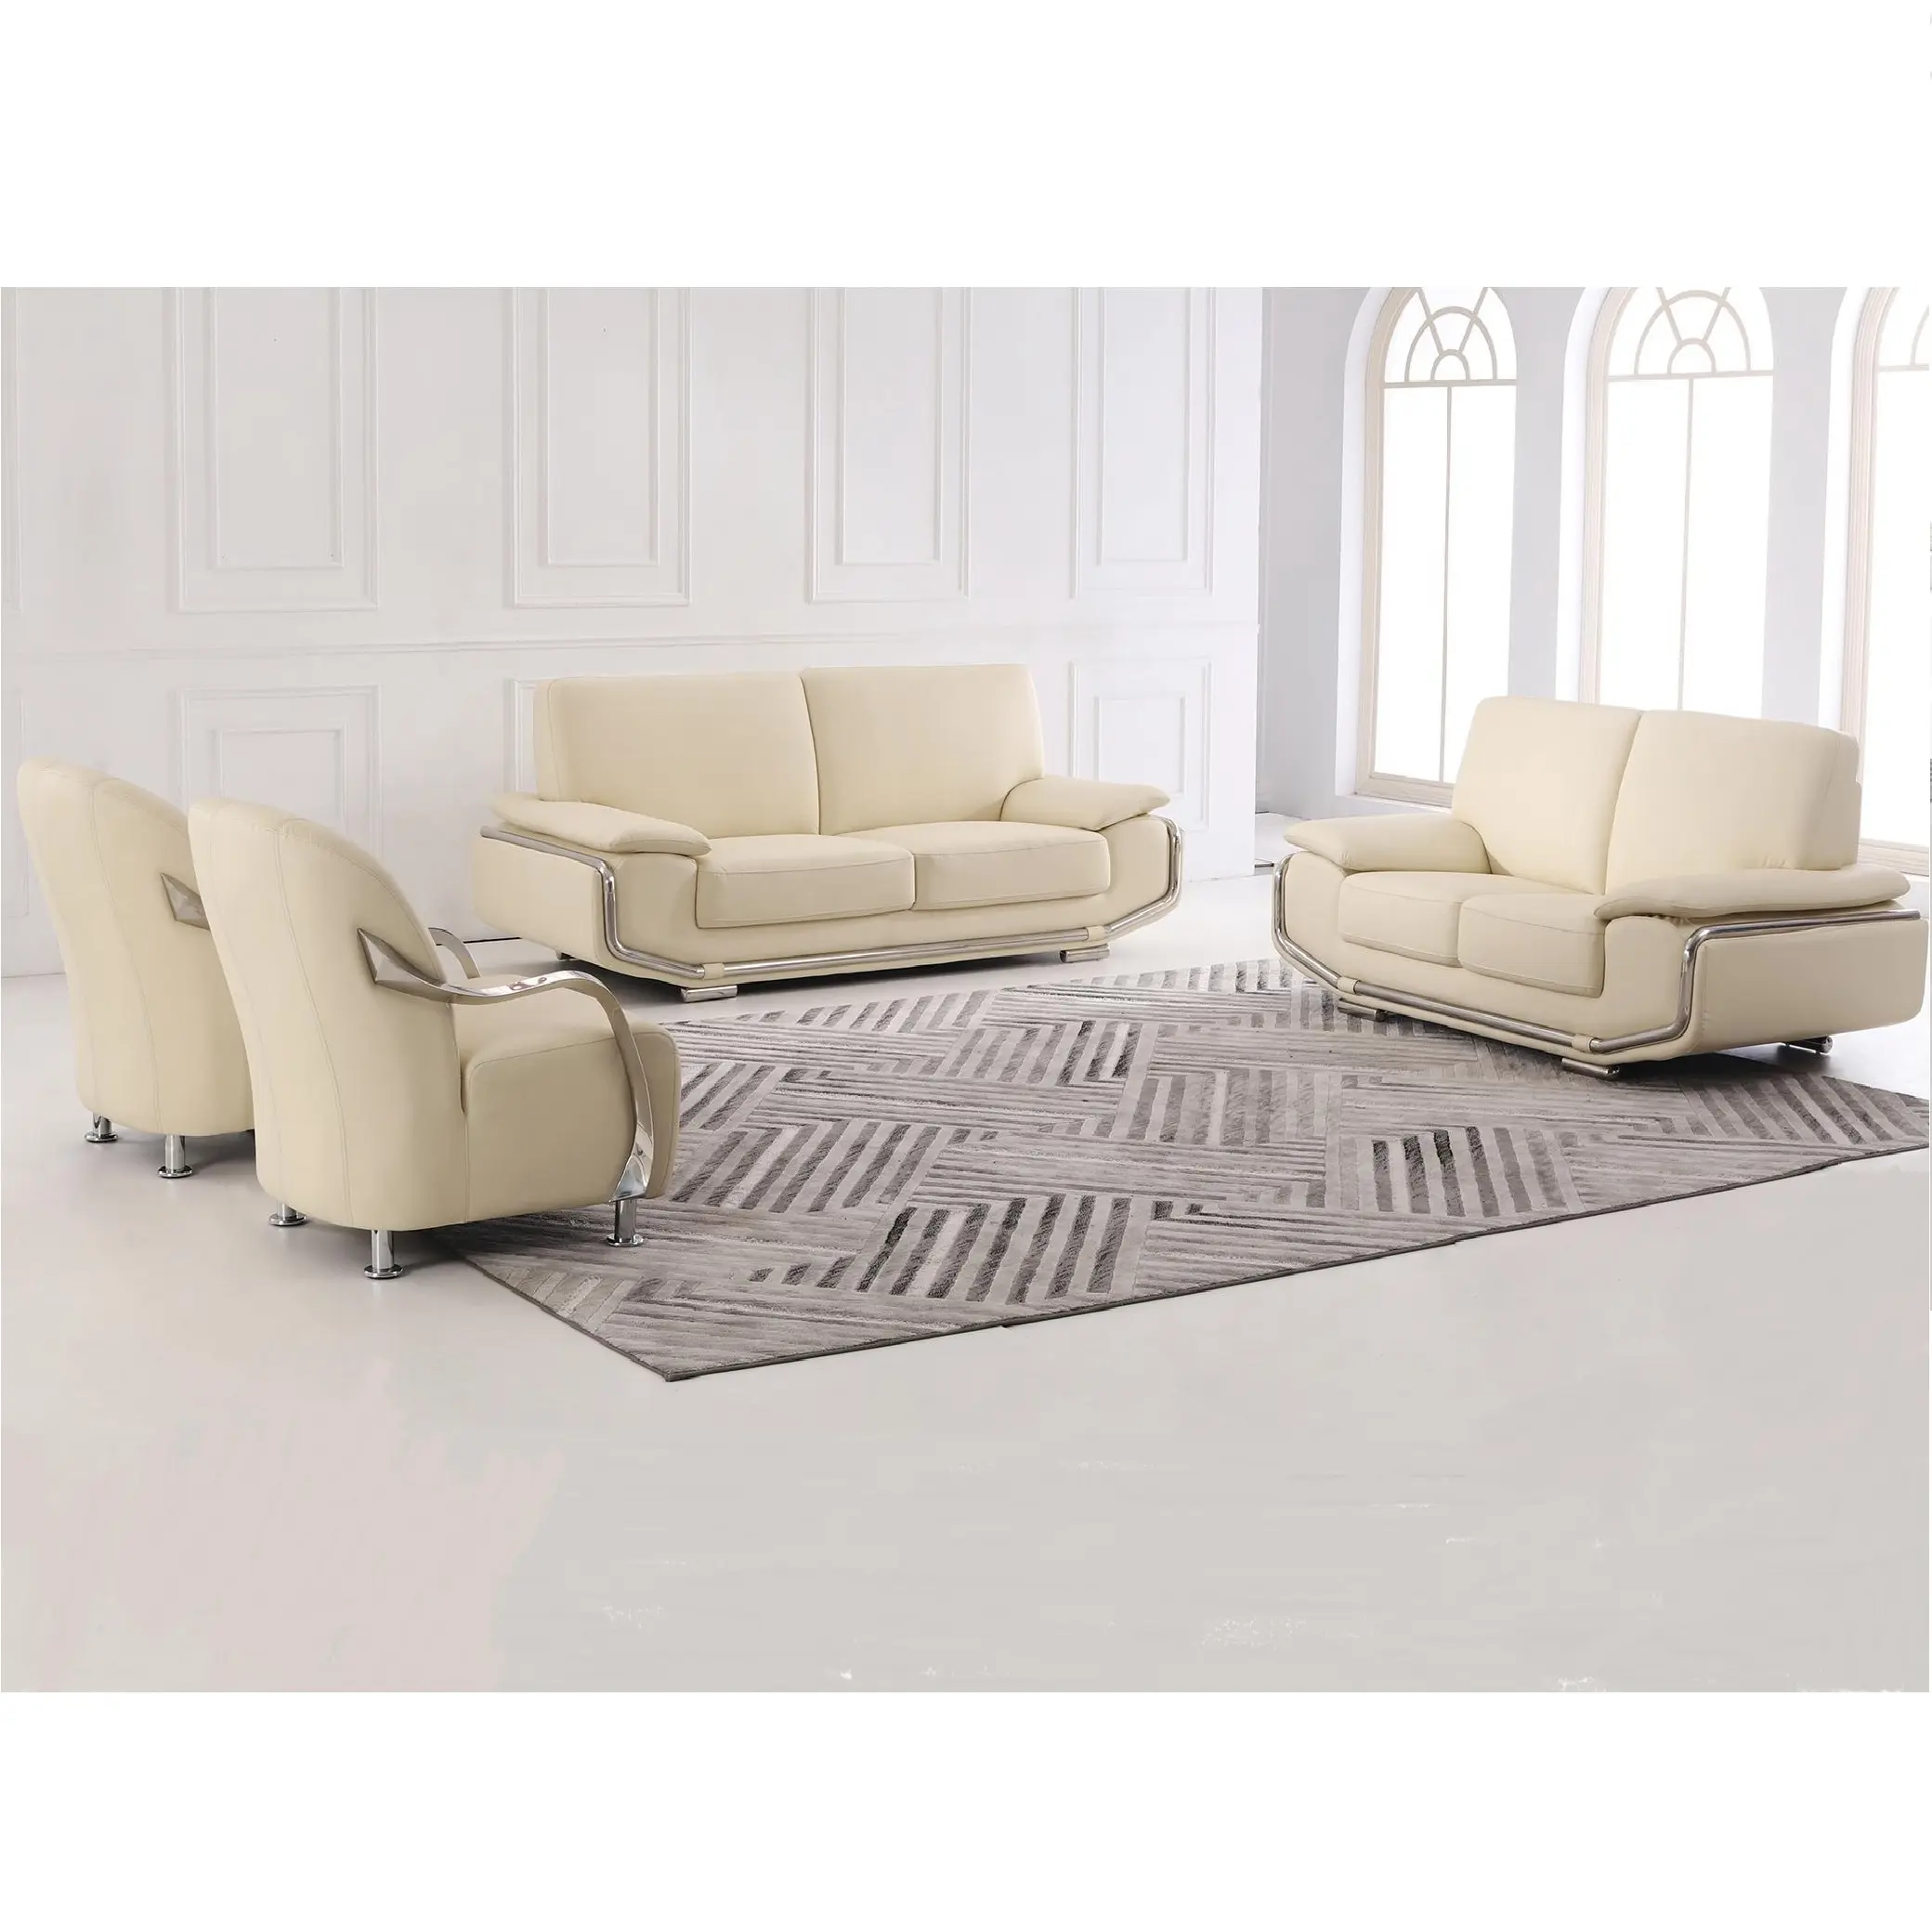 Sofá de cuero de lujo para sala de estar, mueble decorativo moderno de asiento profundo de alta calidad, color blanco, 3 plazas, para el hogar